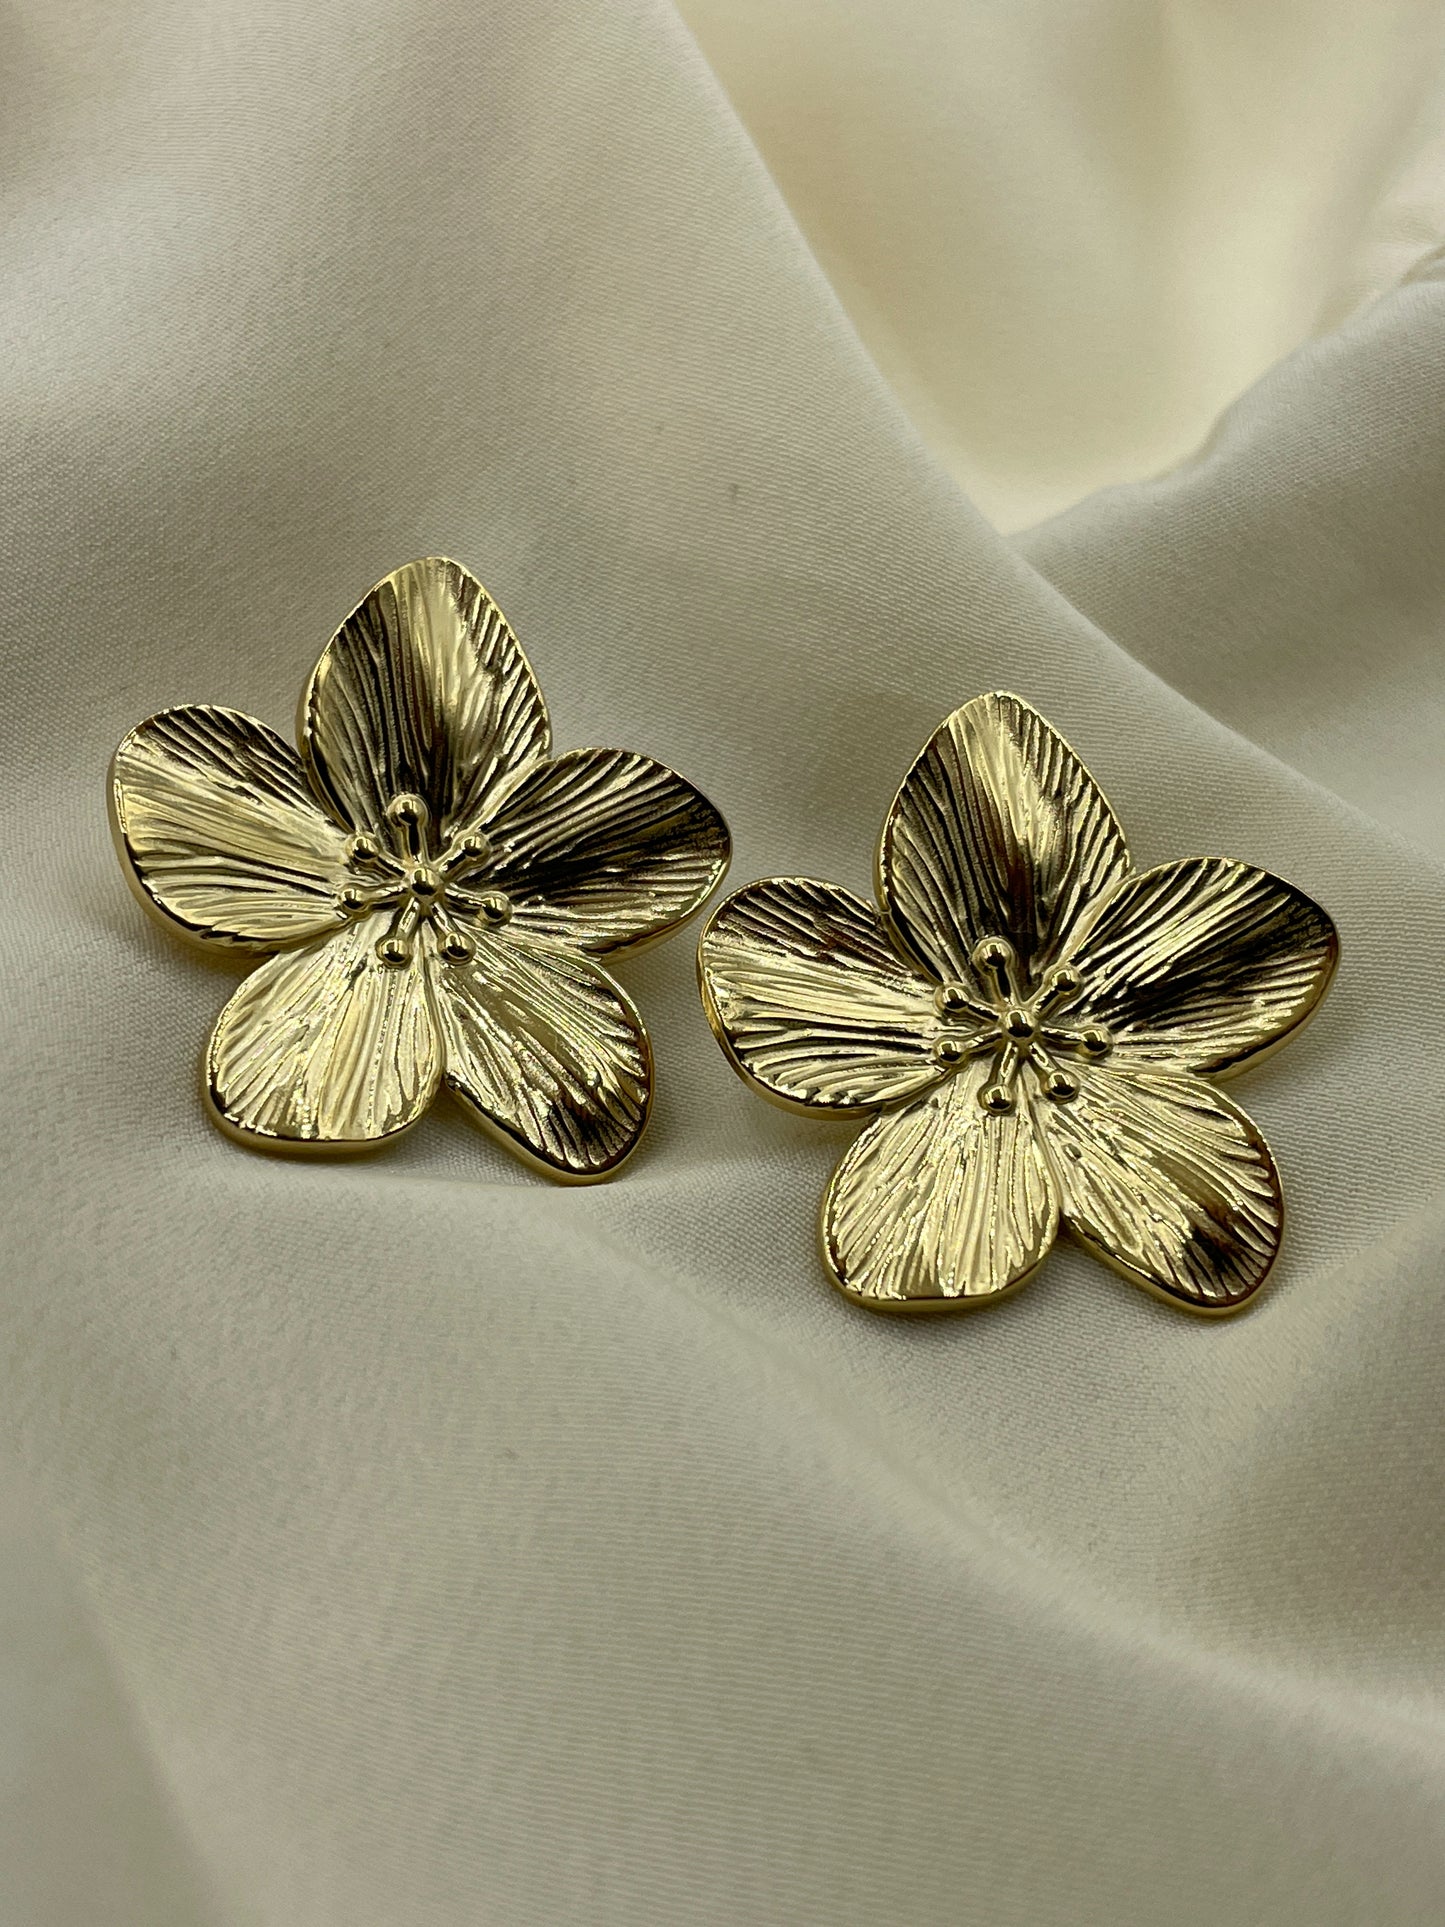 Large Gold Flower Earrings